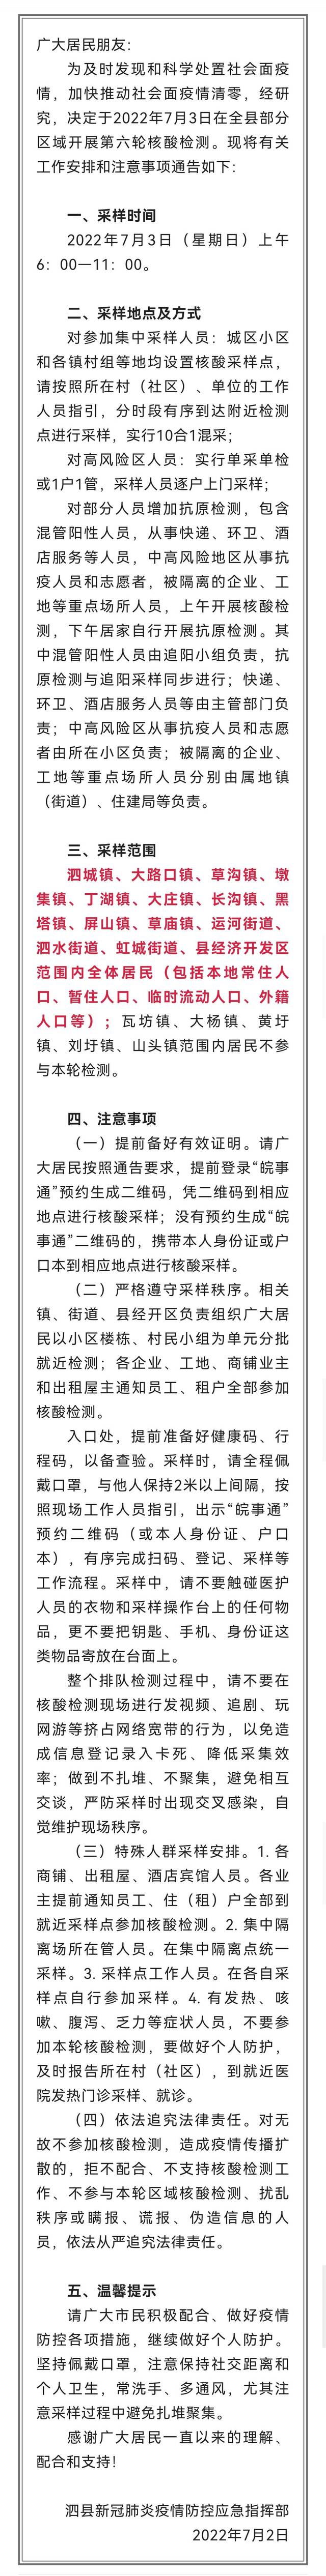 安徽泗县3日开展第六轮核酸检测